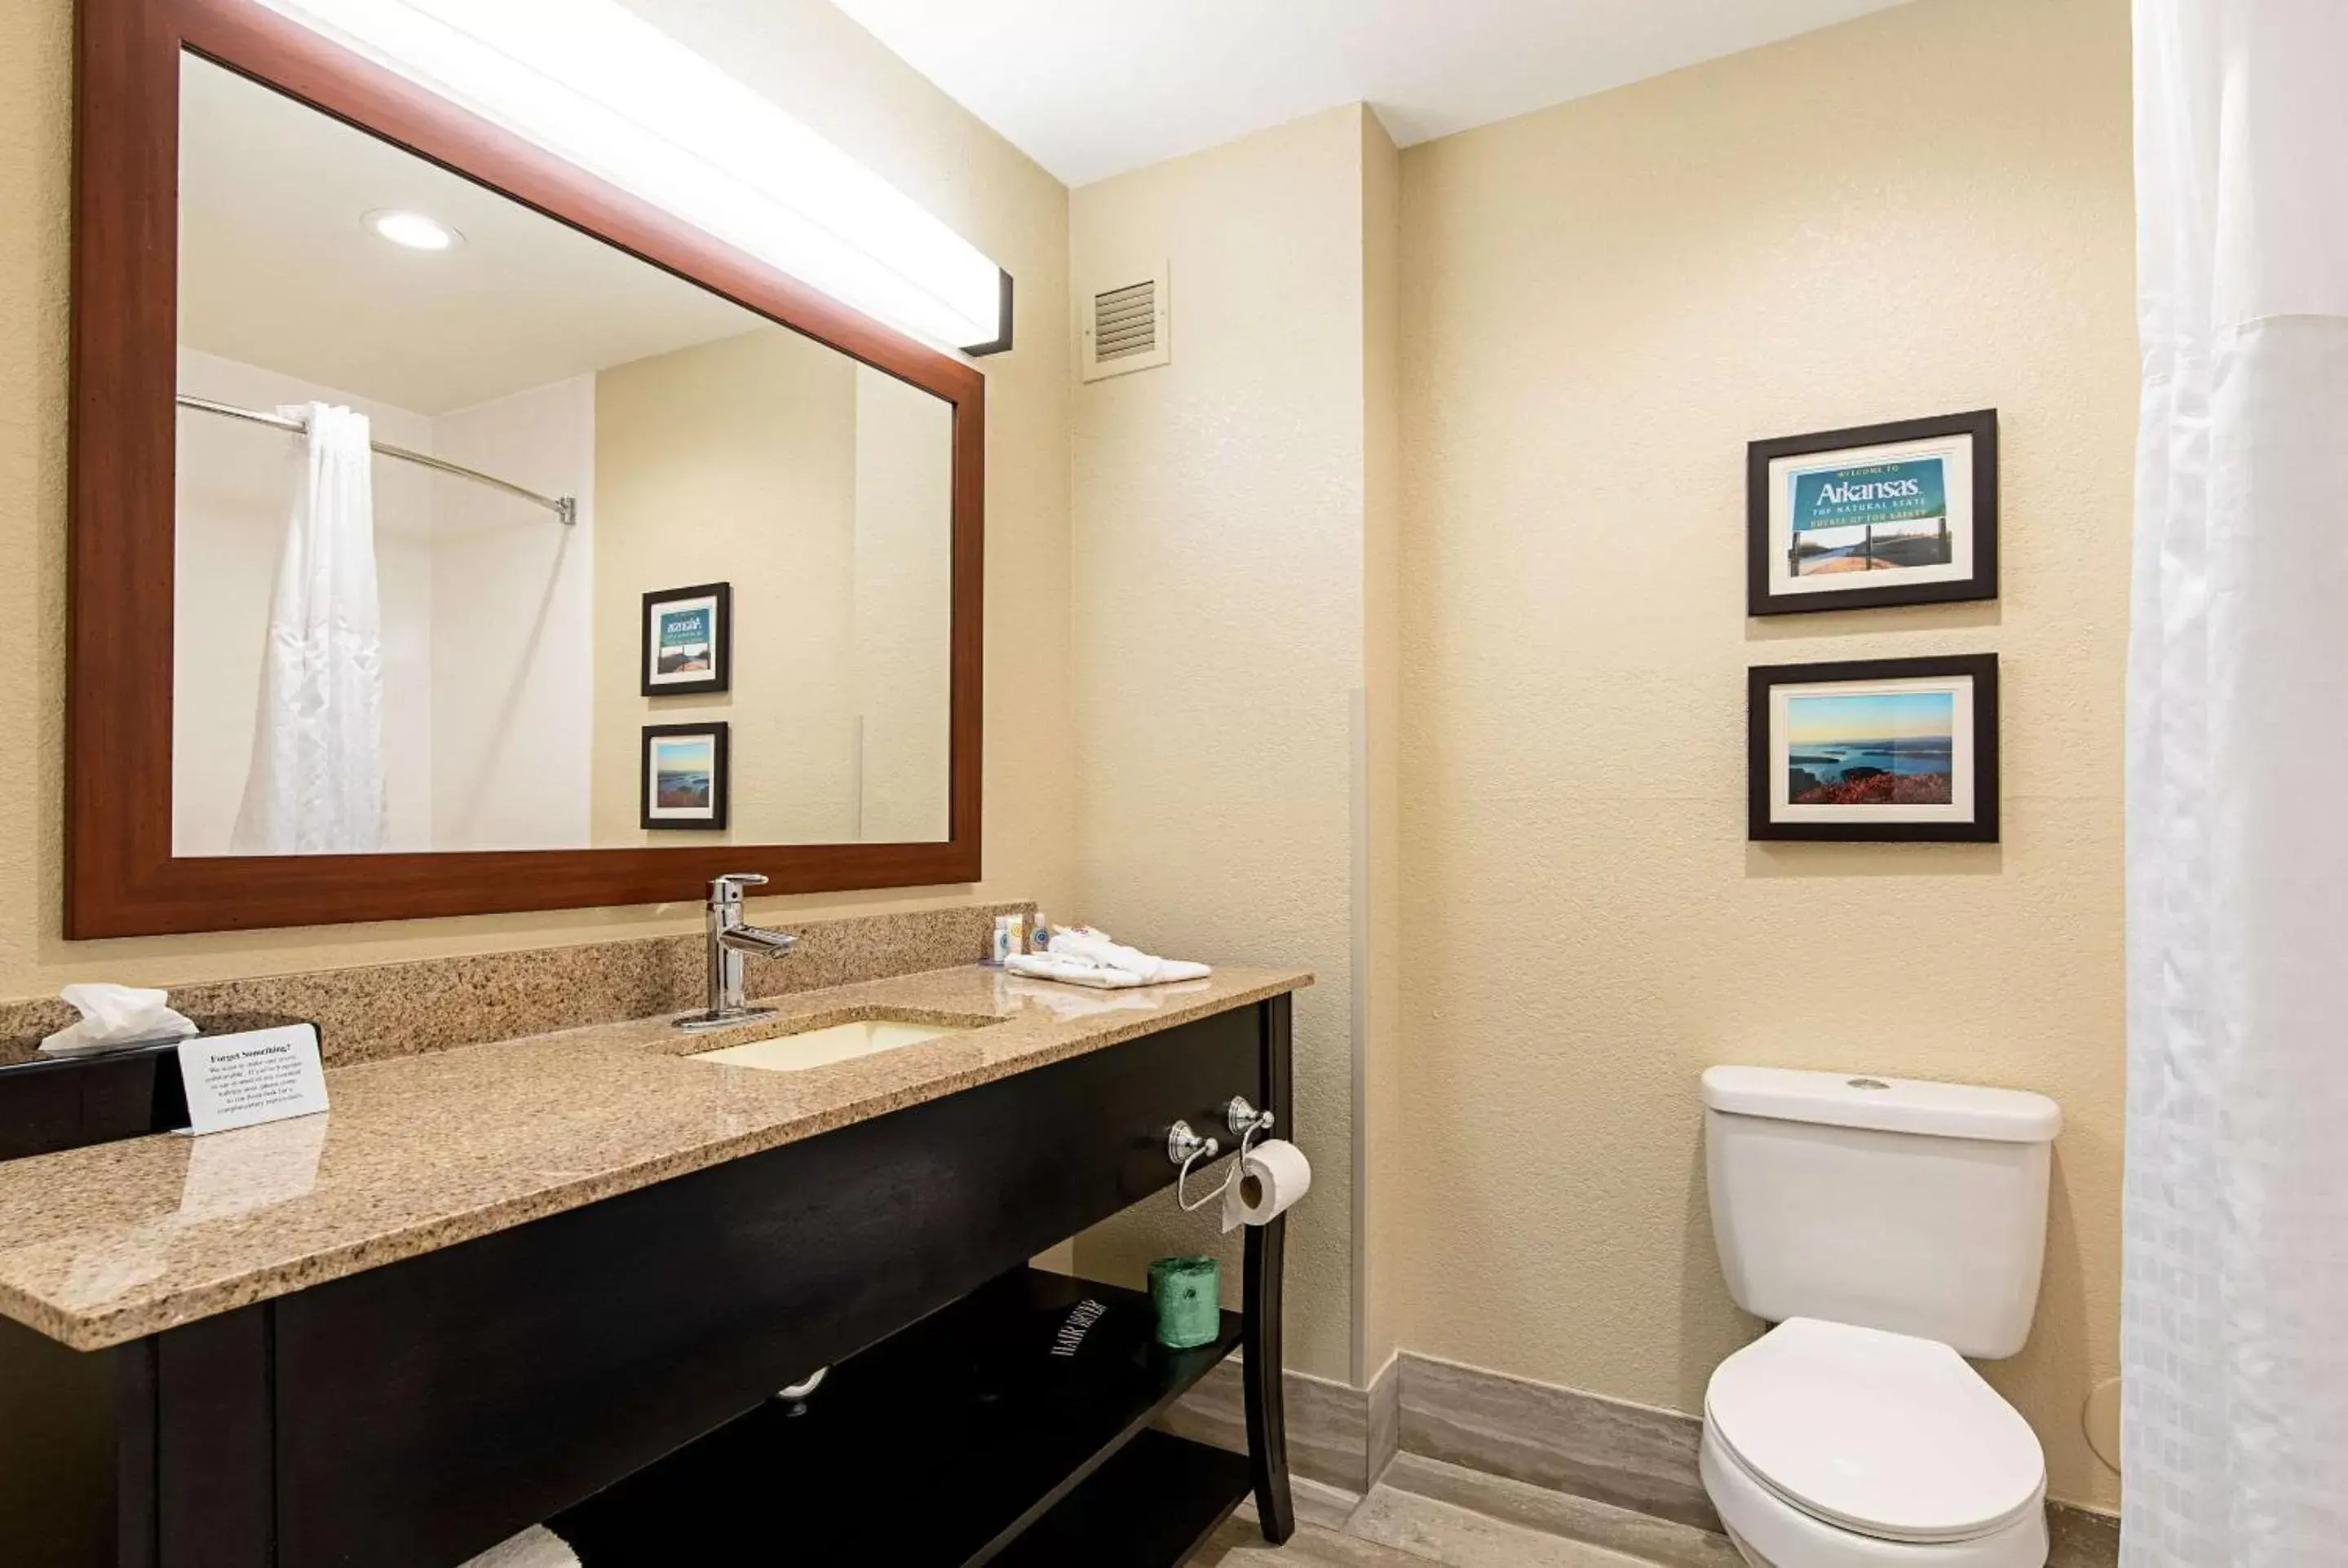 Bedroom, Bathroom in Comfort Inn & Suites Pine Bluff